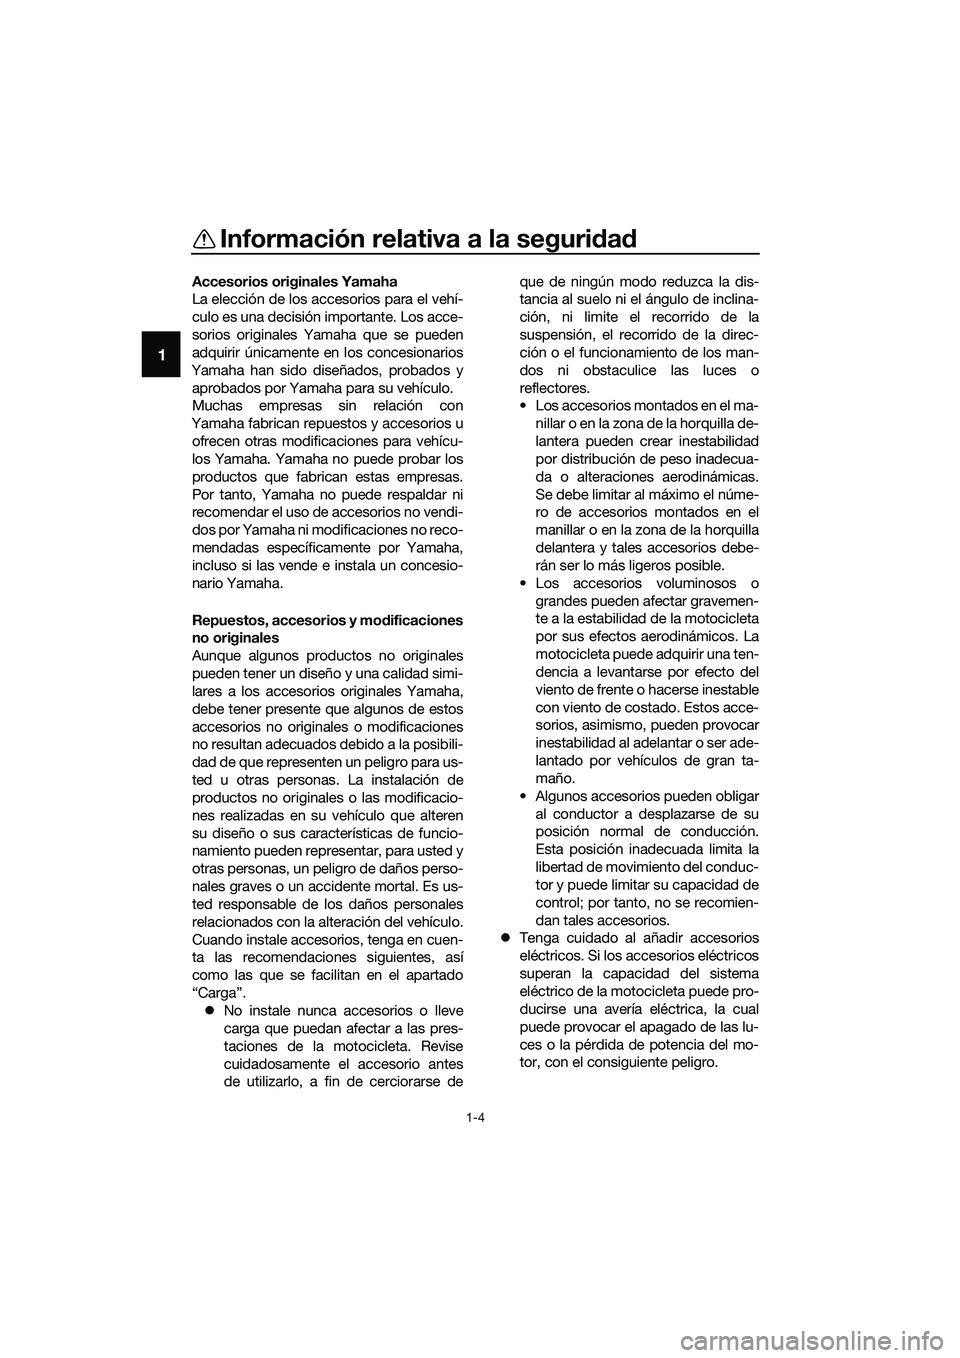 YAMAHA MT-03 2020  Manuale de Empleo (in Spanish) Información relativa a la seguridad
1-4
1
Accesorios originales Yamaha
La elección de los accesorios para el vehí-
culo es una decisión importante. Los acce-
sorios originales Yamaha que se pueden